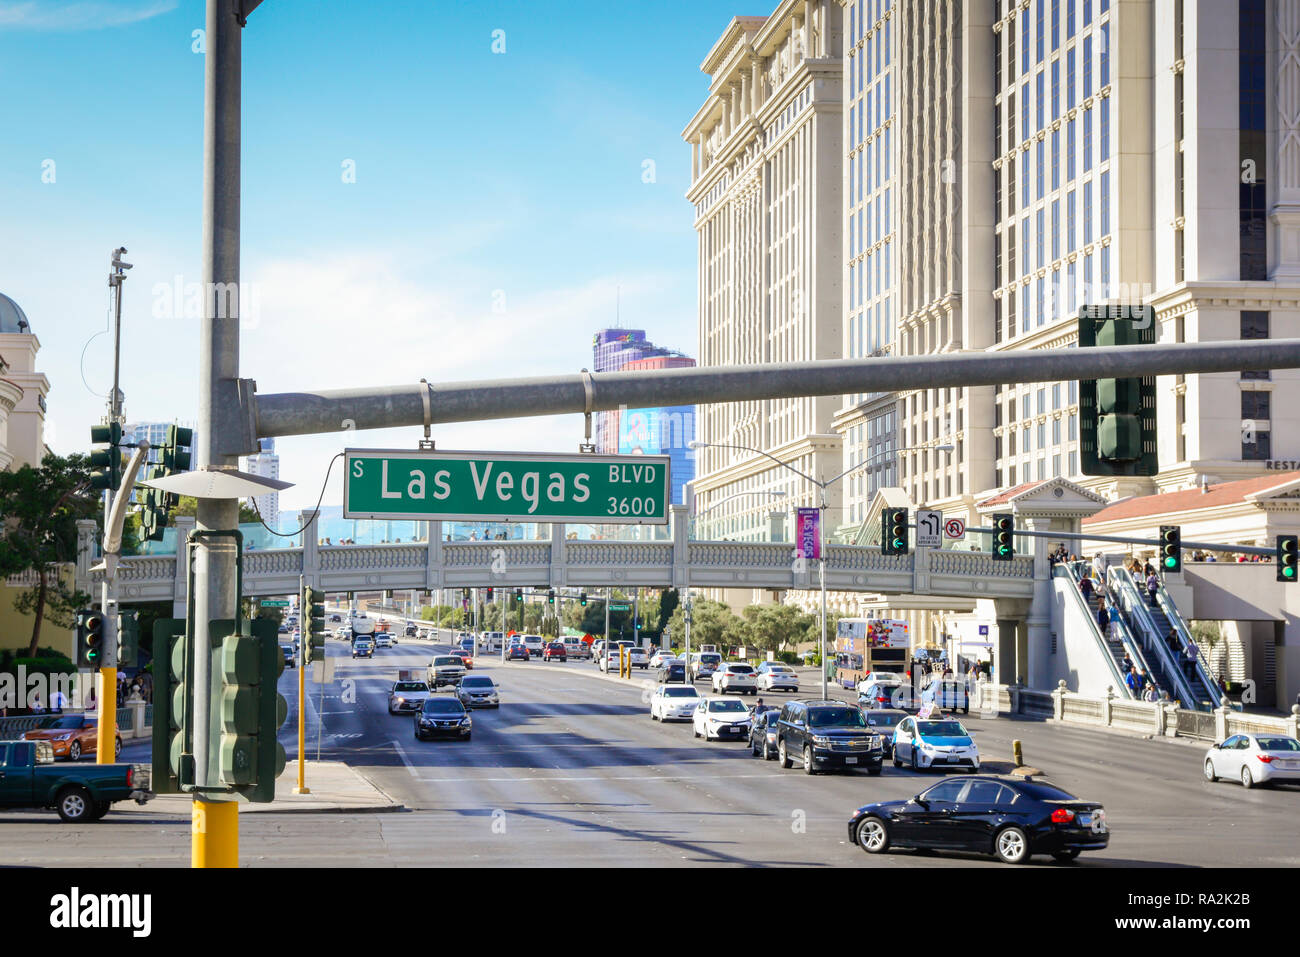 Straßenschild für Las Vegas Blvd, wie dem Las Vegas Strip bekannt, in Las Vegas, NV mit Hotels und Kasinos Futter den Strip entlang mit Fußgänger-Brücken Stockfoto